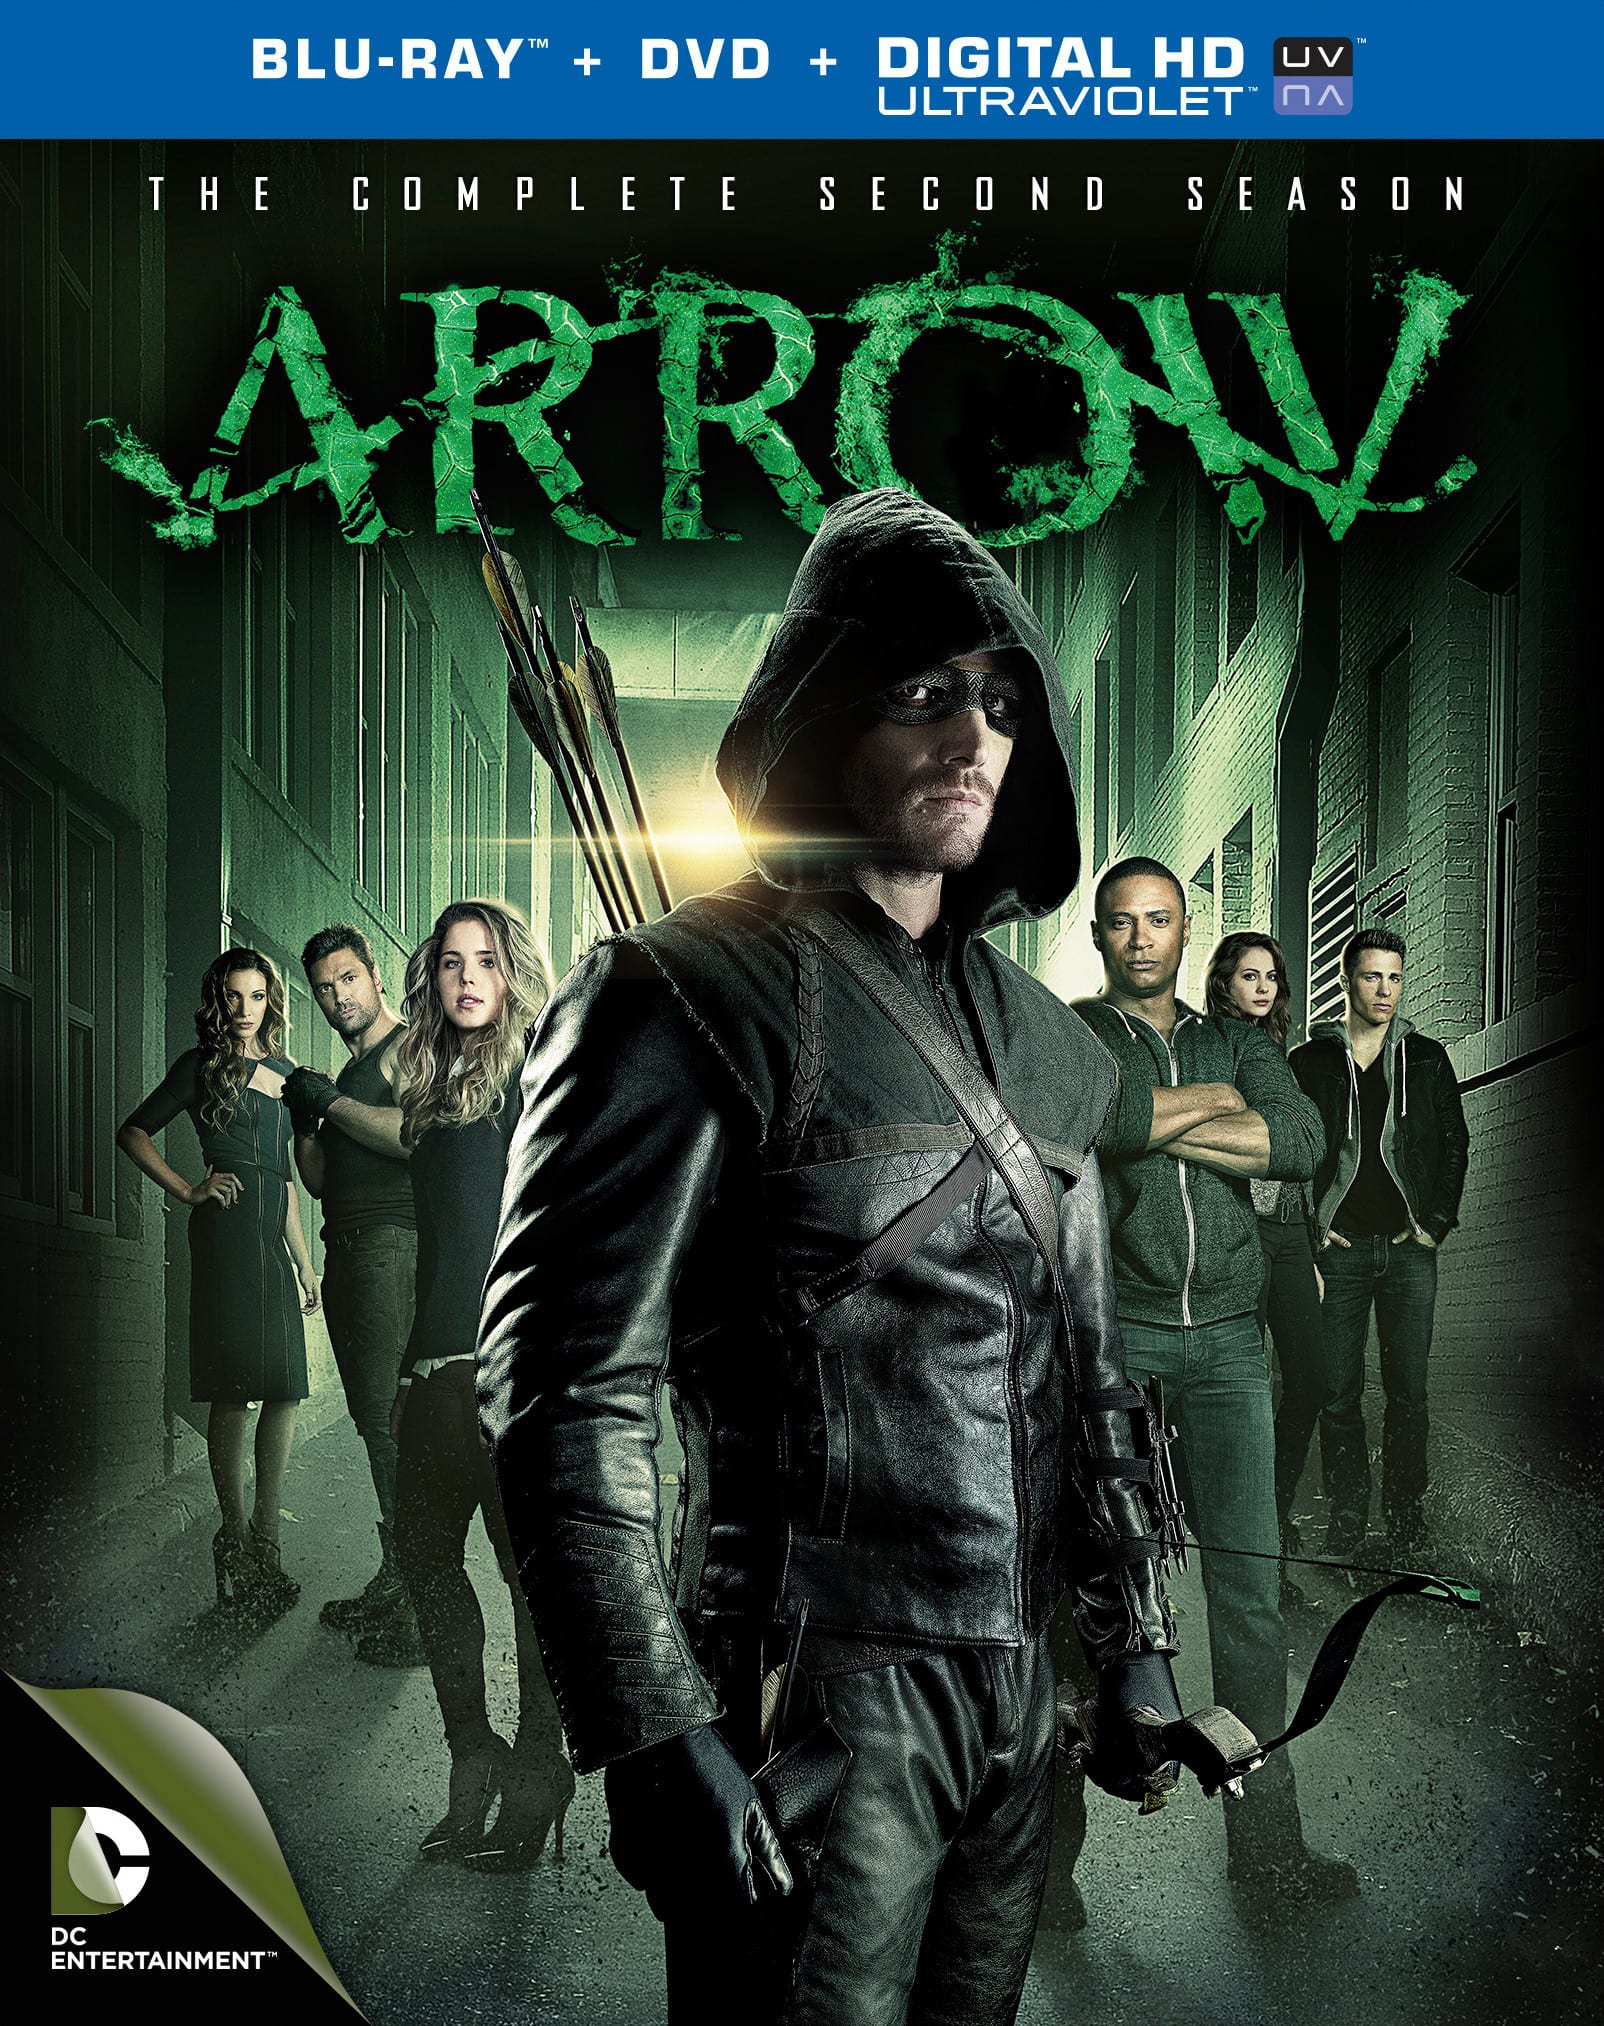 Arrow Season 2 Blu-ray fecha de lanzamiento y detalles anunciados